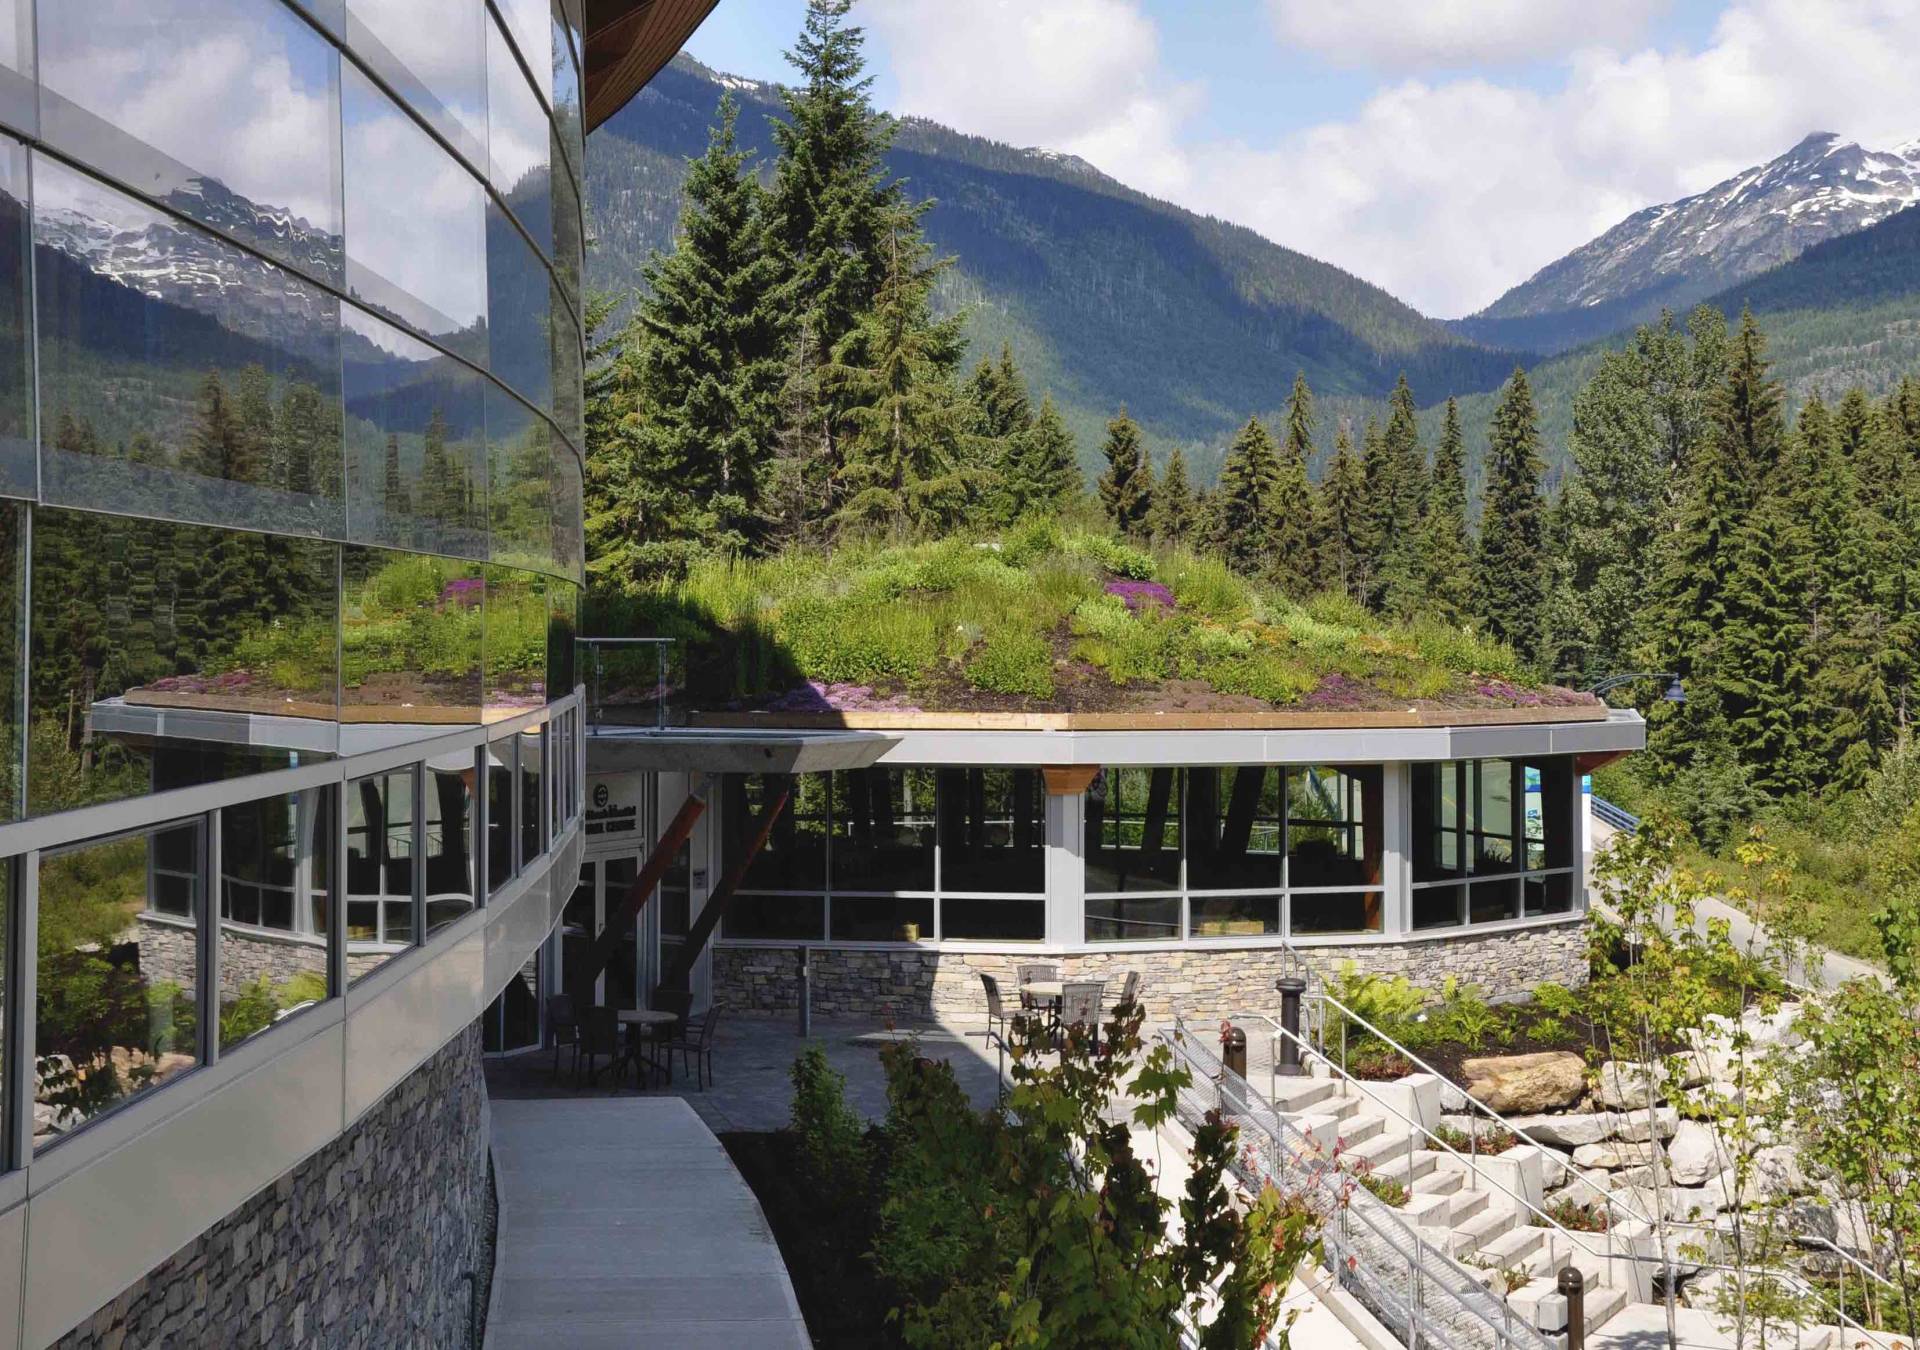 Squamish Cultural Centre